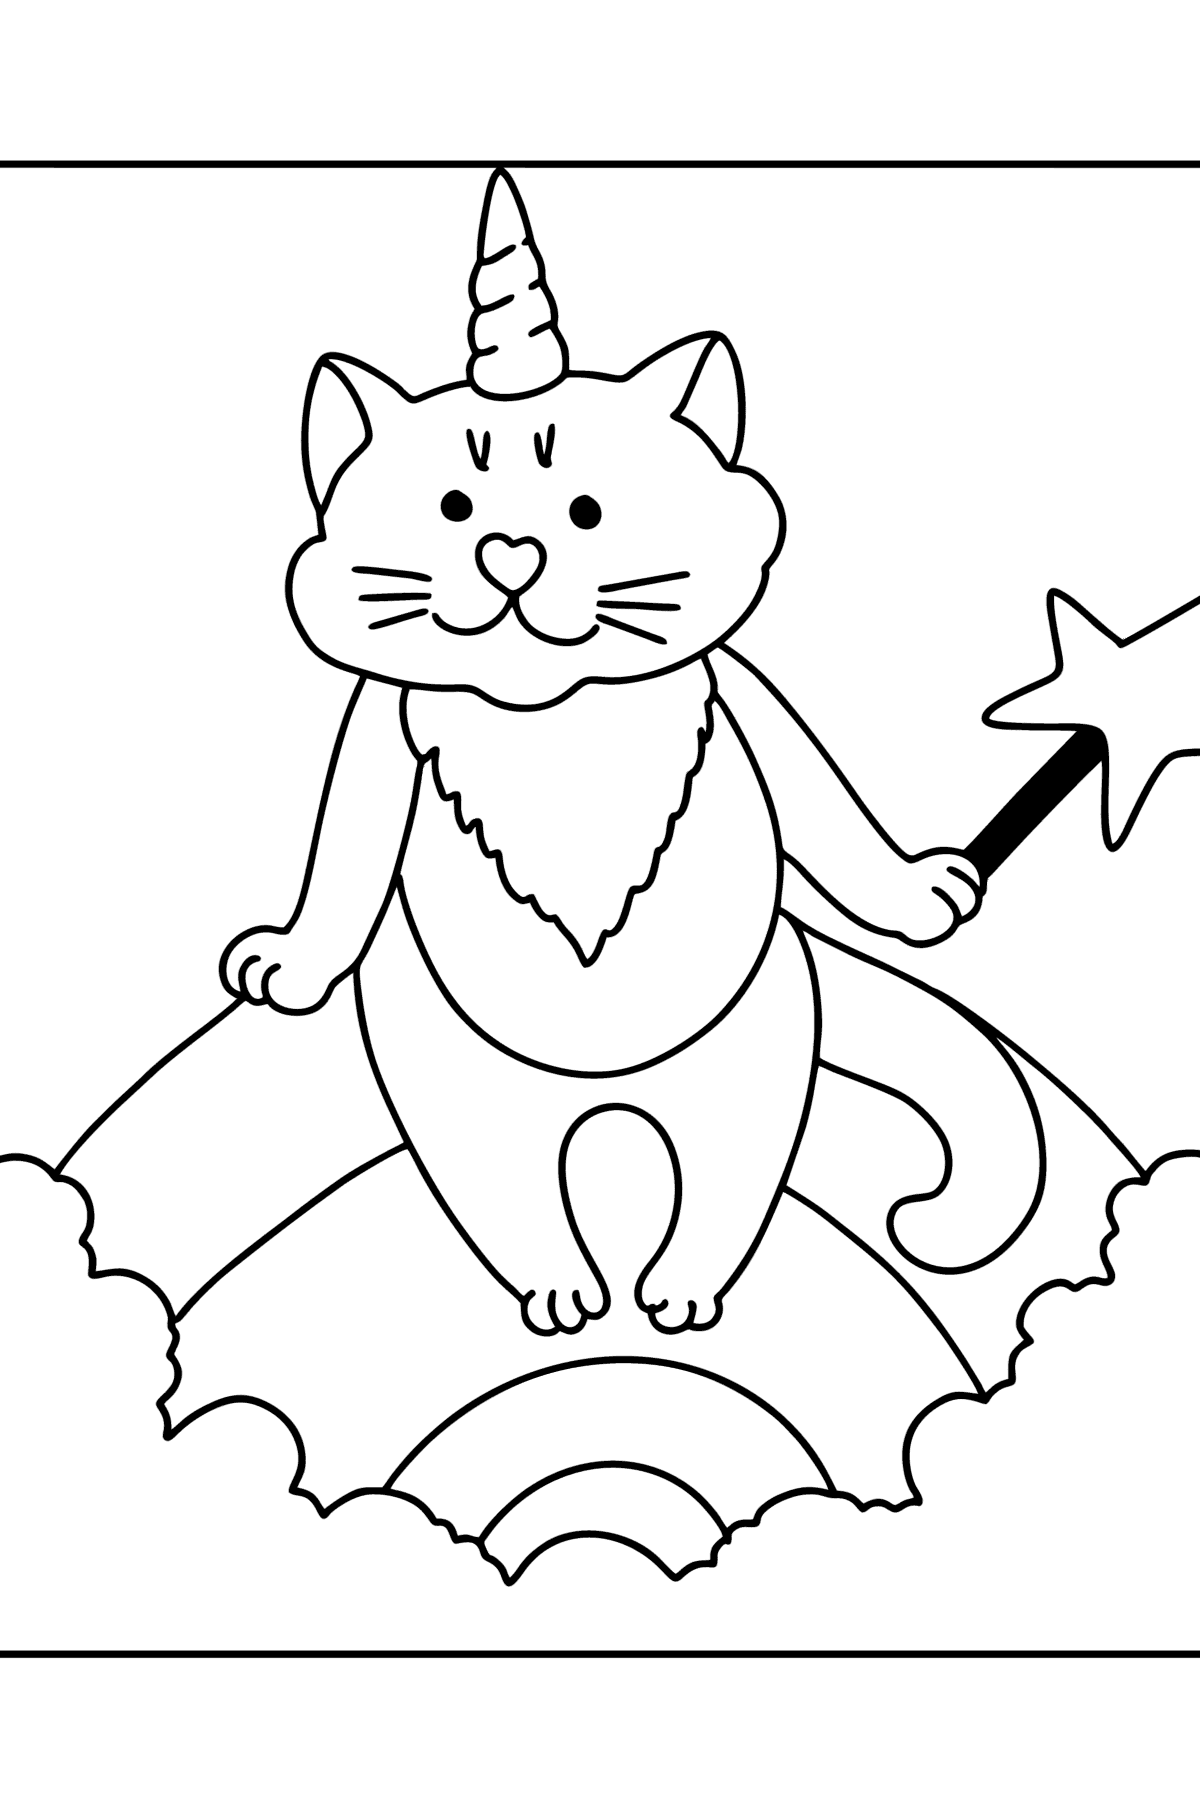 Dibujo de Gatito Unicornio para colorear - Dibujos para Colorear para Niños